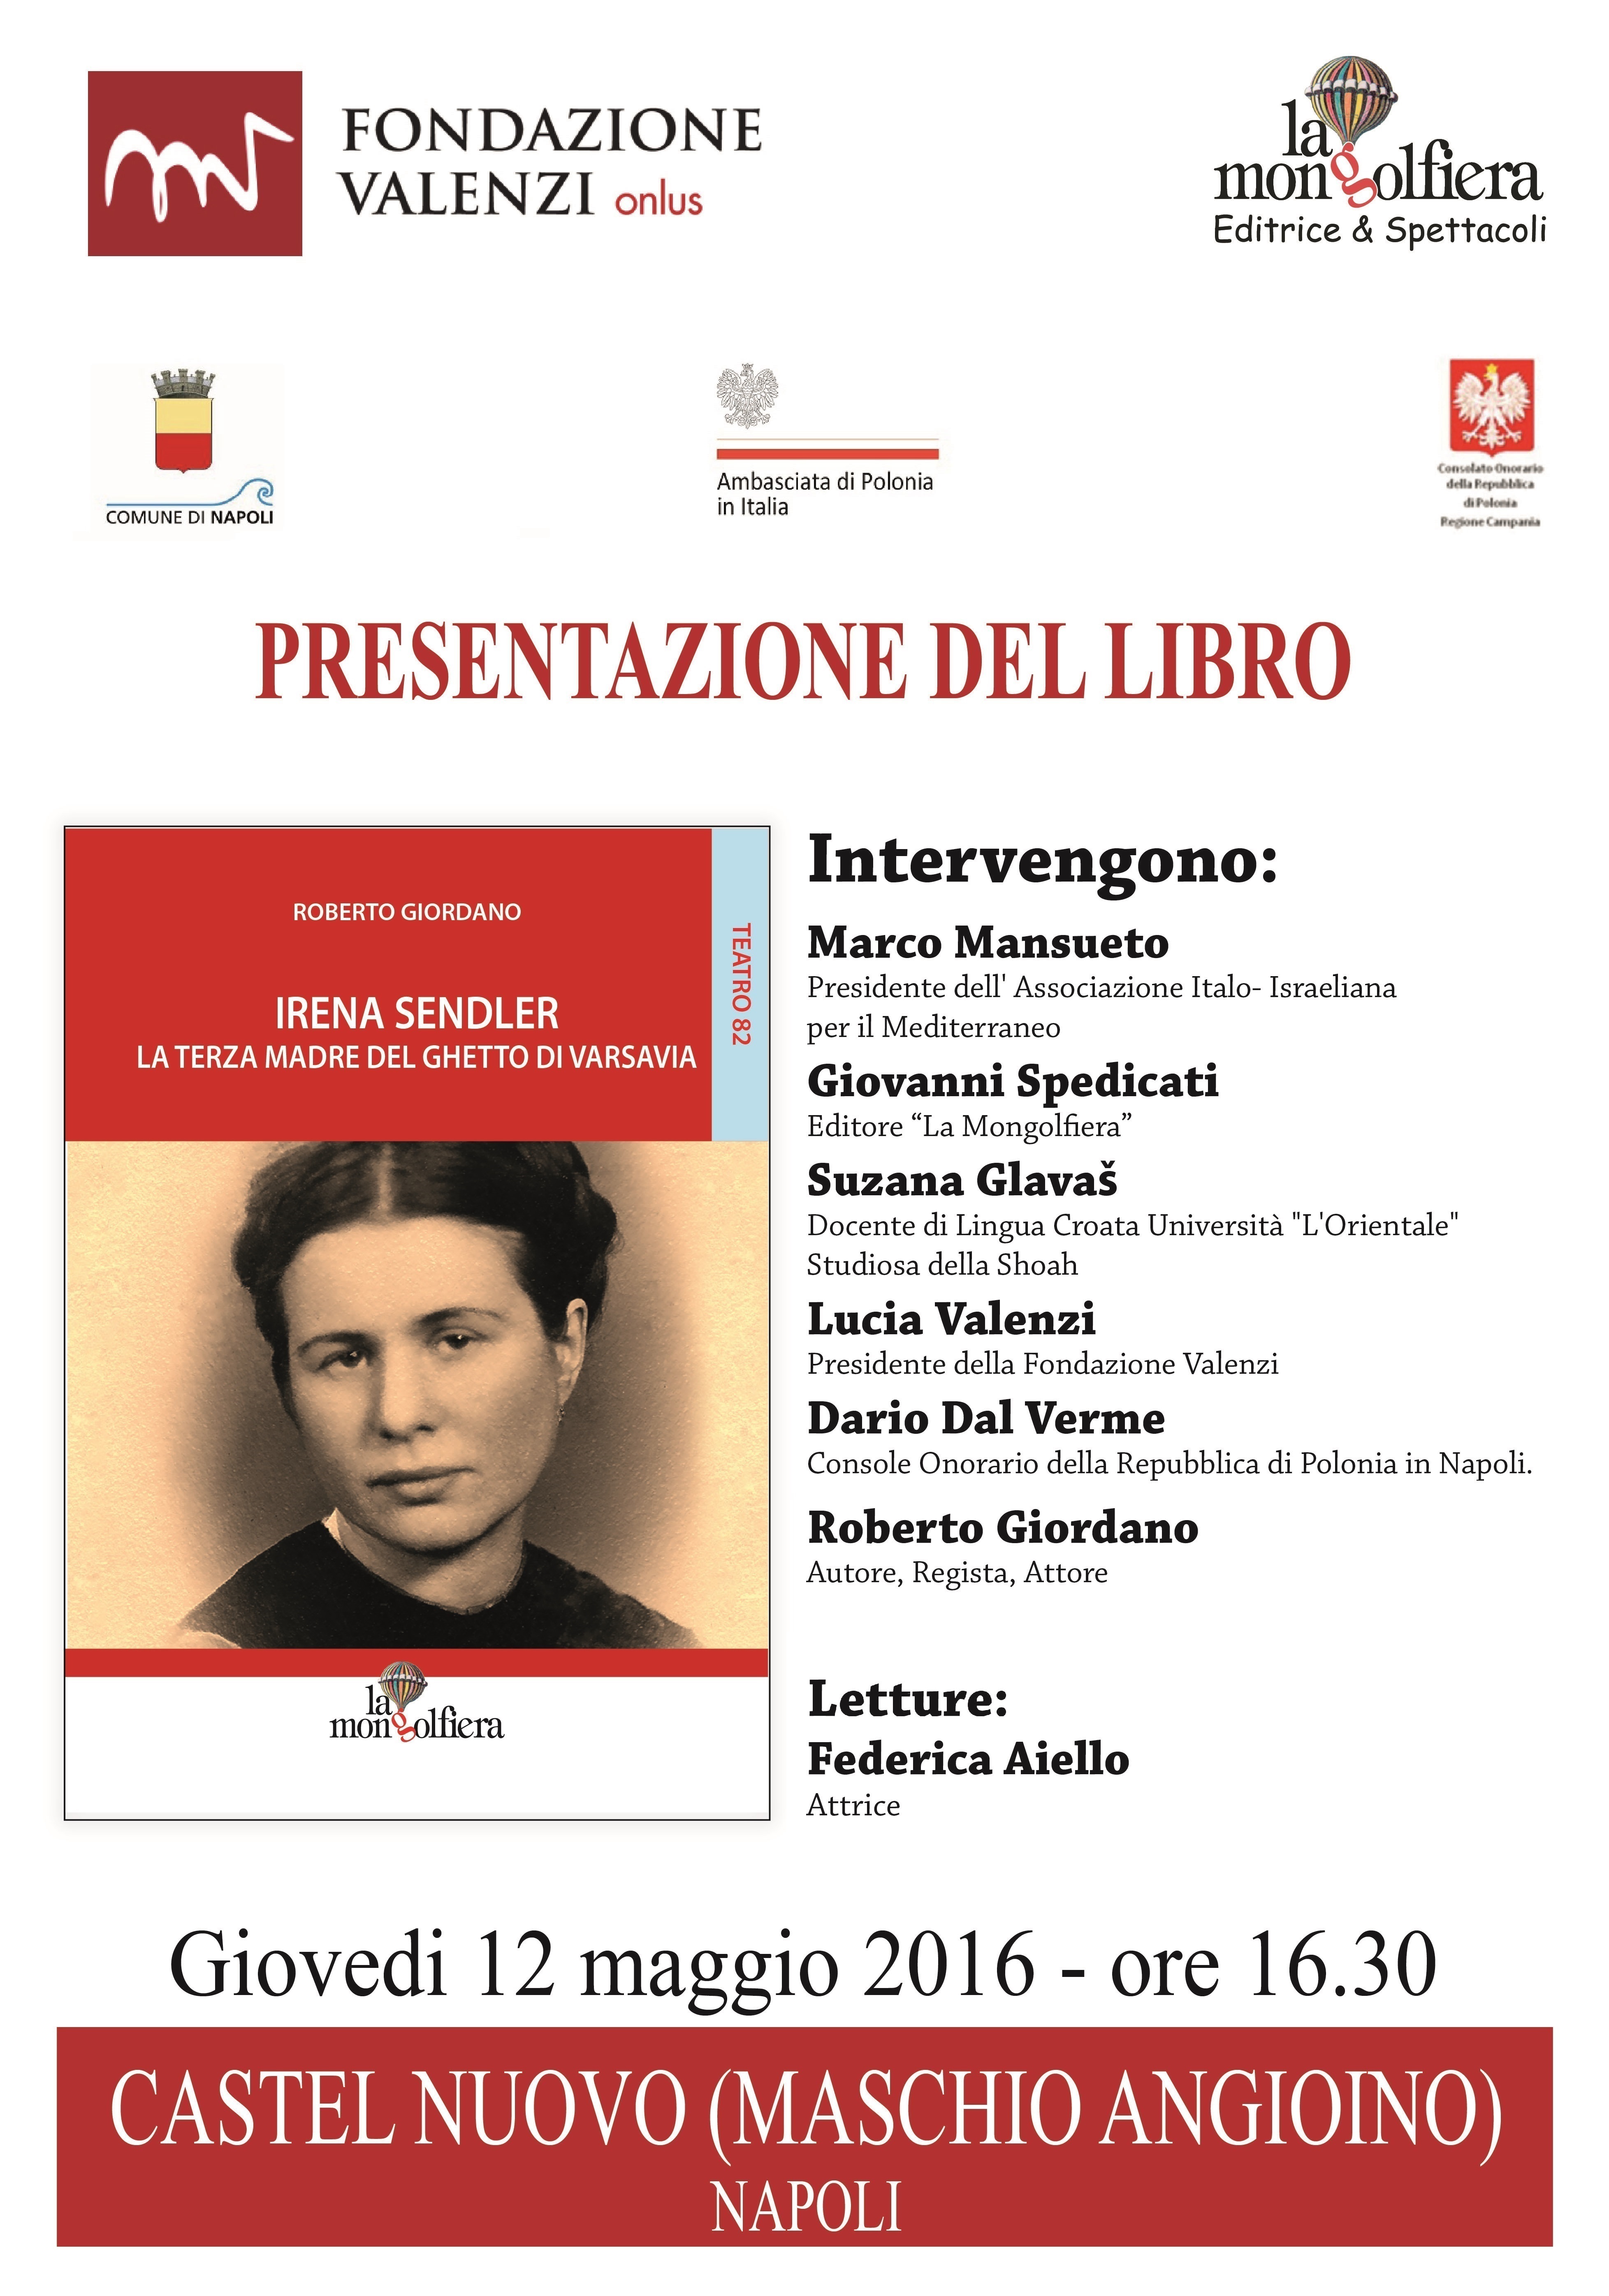 Napoli, 12 maggio 2016: Fondazione Valenzi